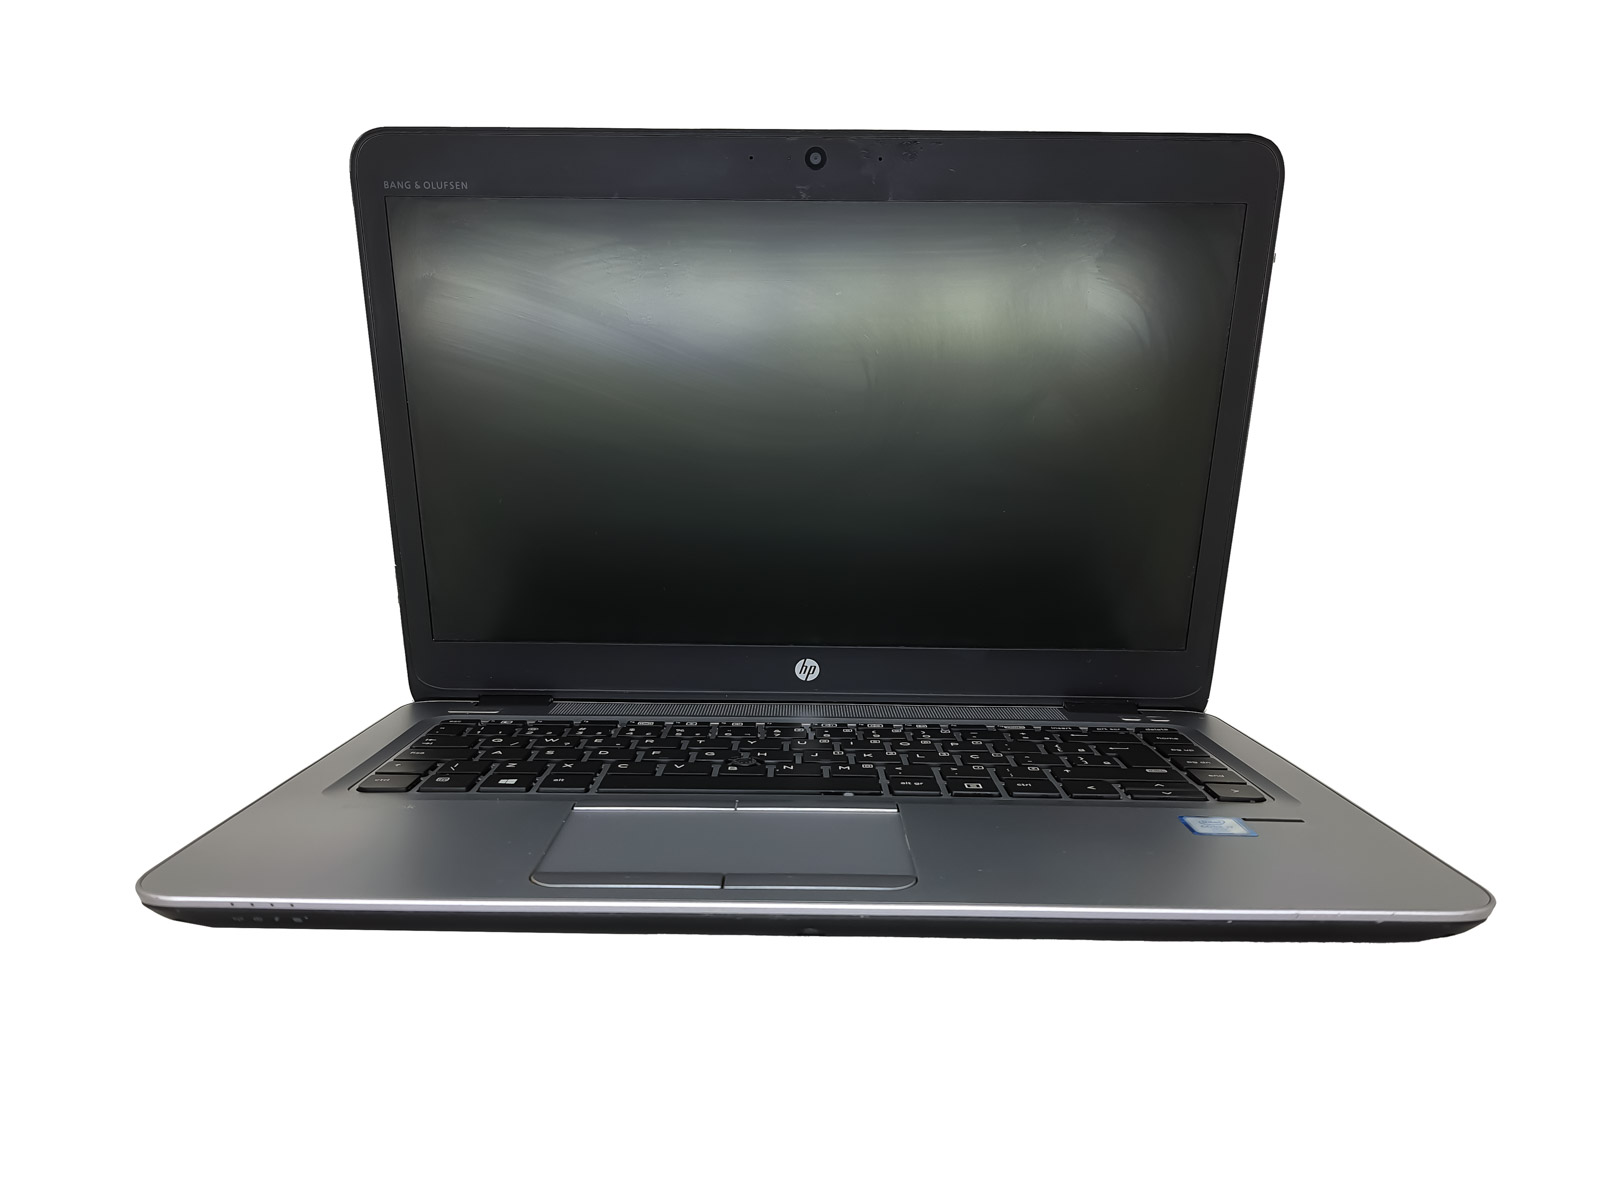 Notebook HP i7 Sexta Geração - HP ELITEBOOK 840 G3 com Processador Intel Core i7 Sexta Geração - RAM 8GB - HD 500GB - TELA 14